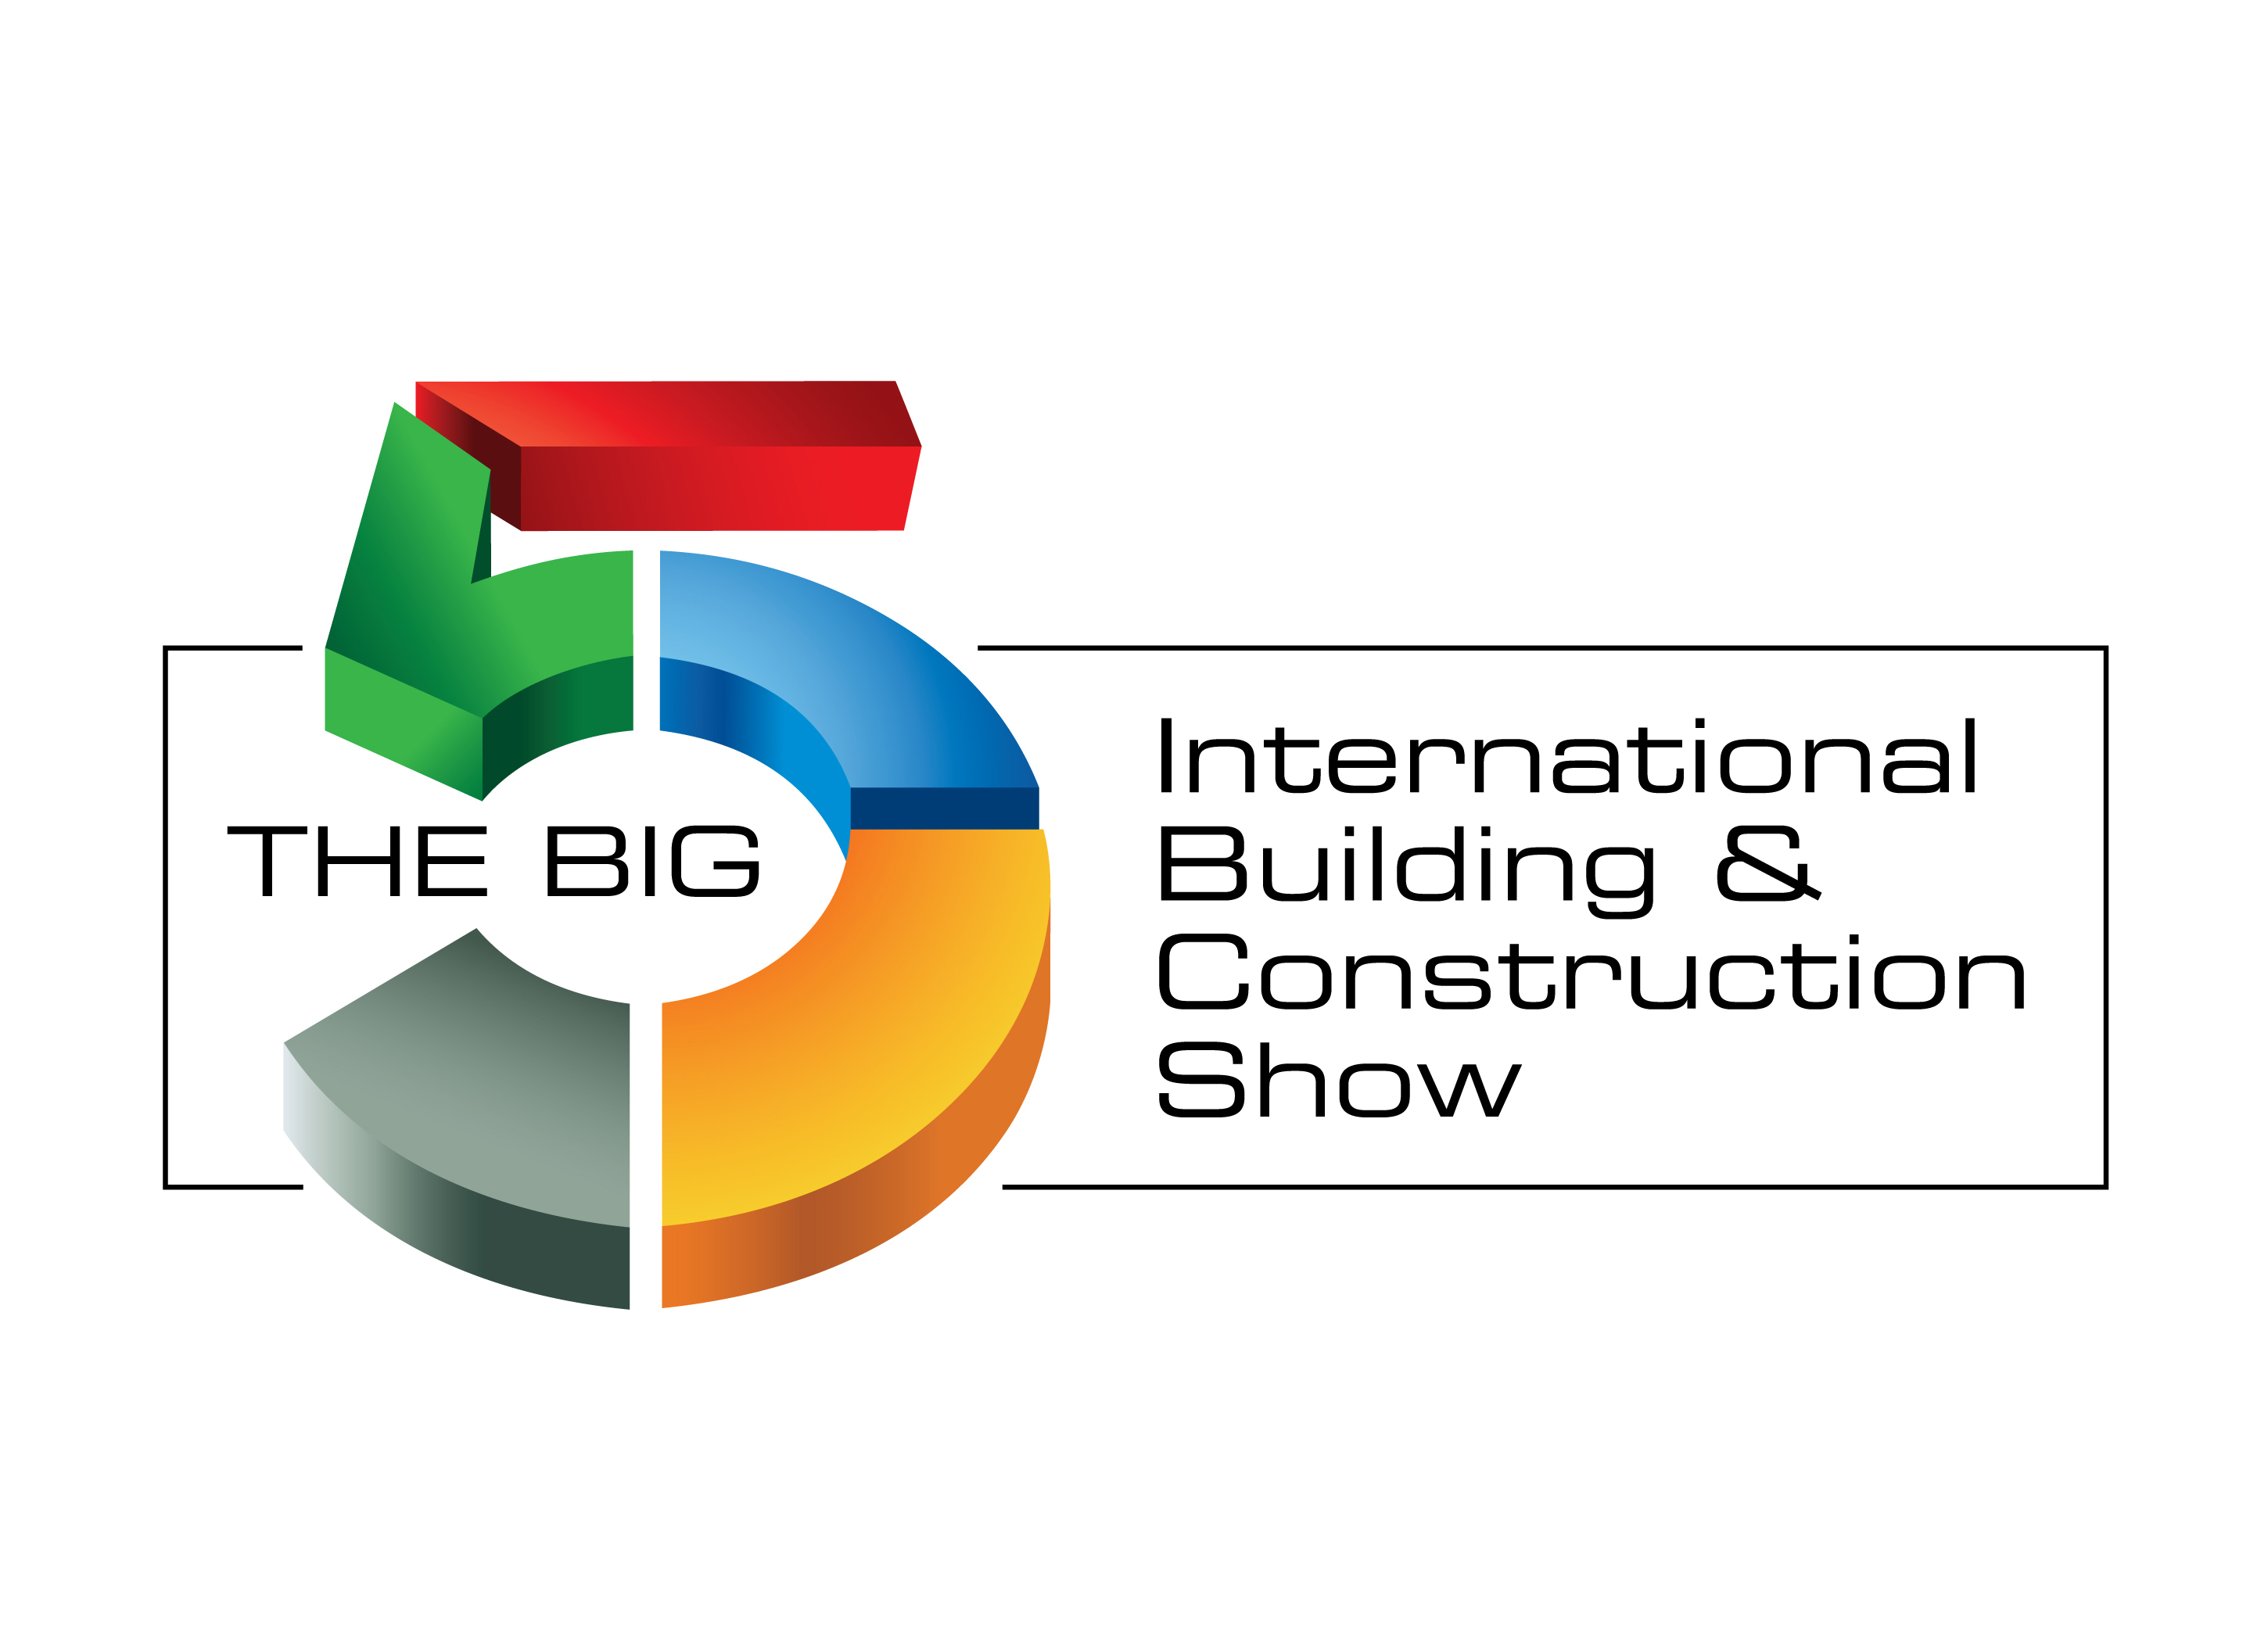 Pameran Konstruksi The Big 5 Dubai